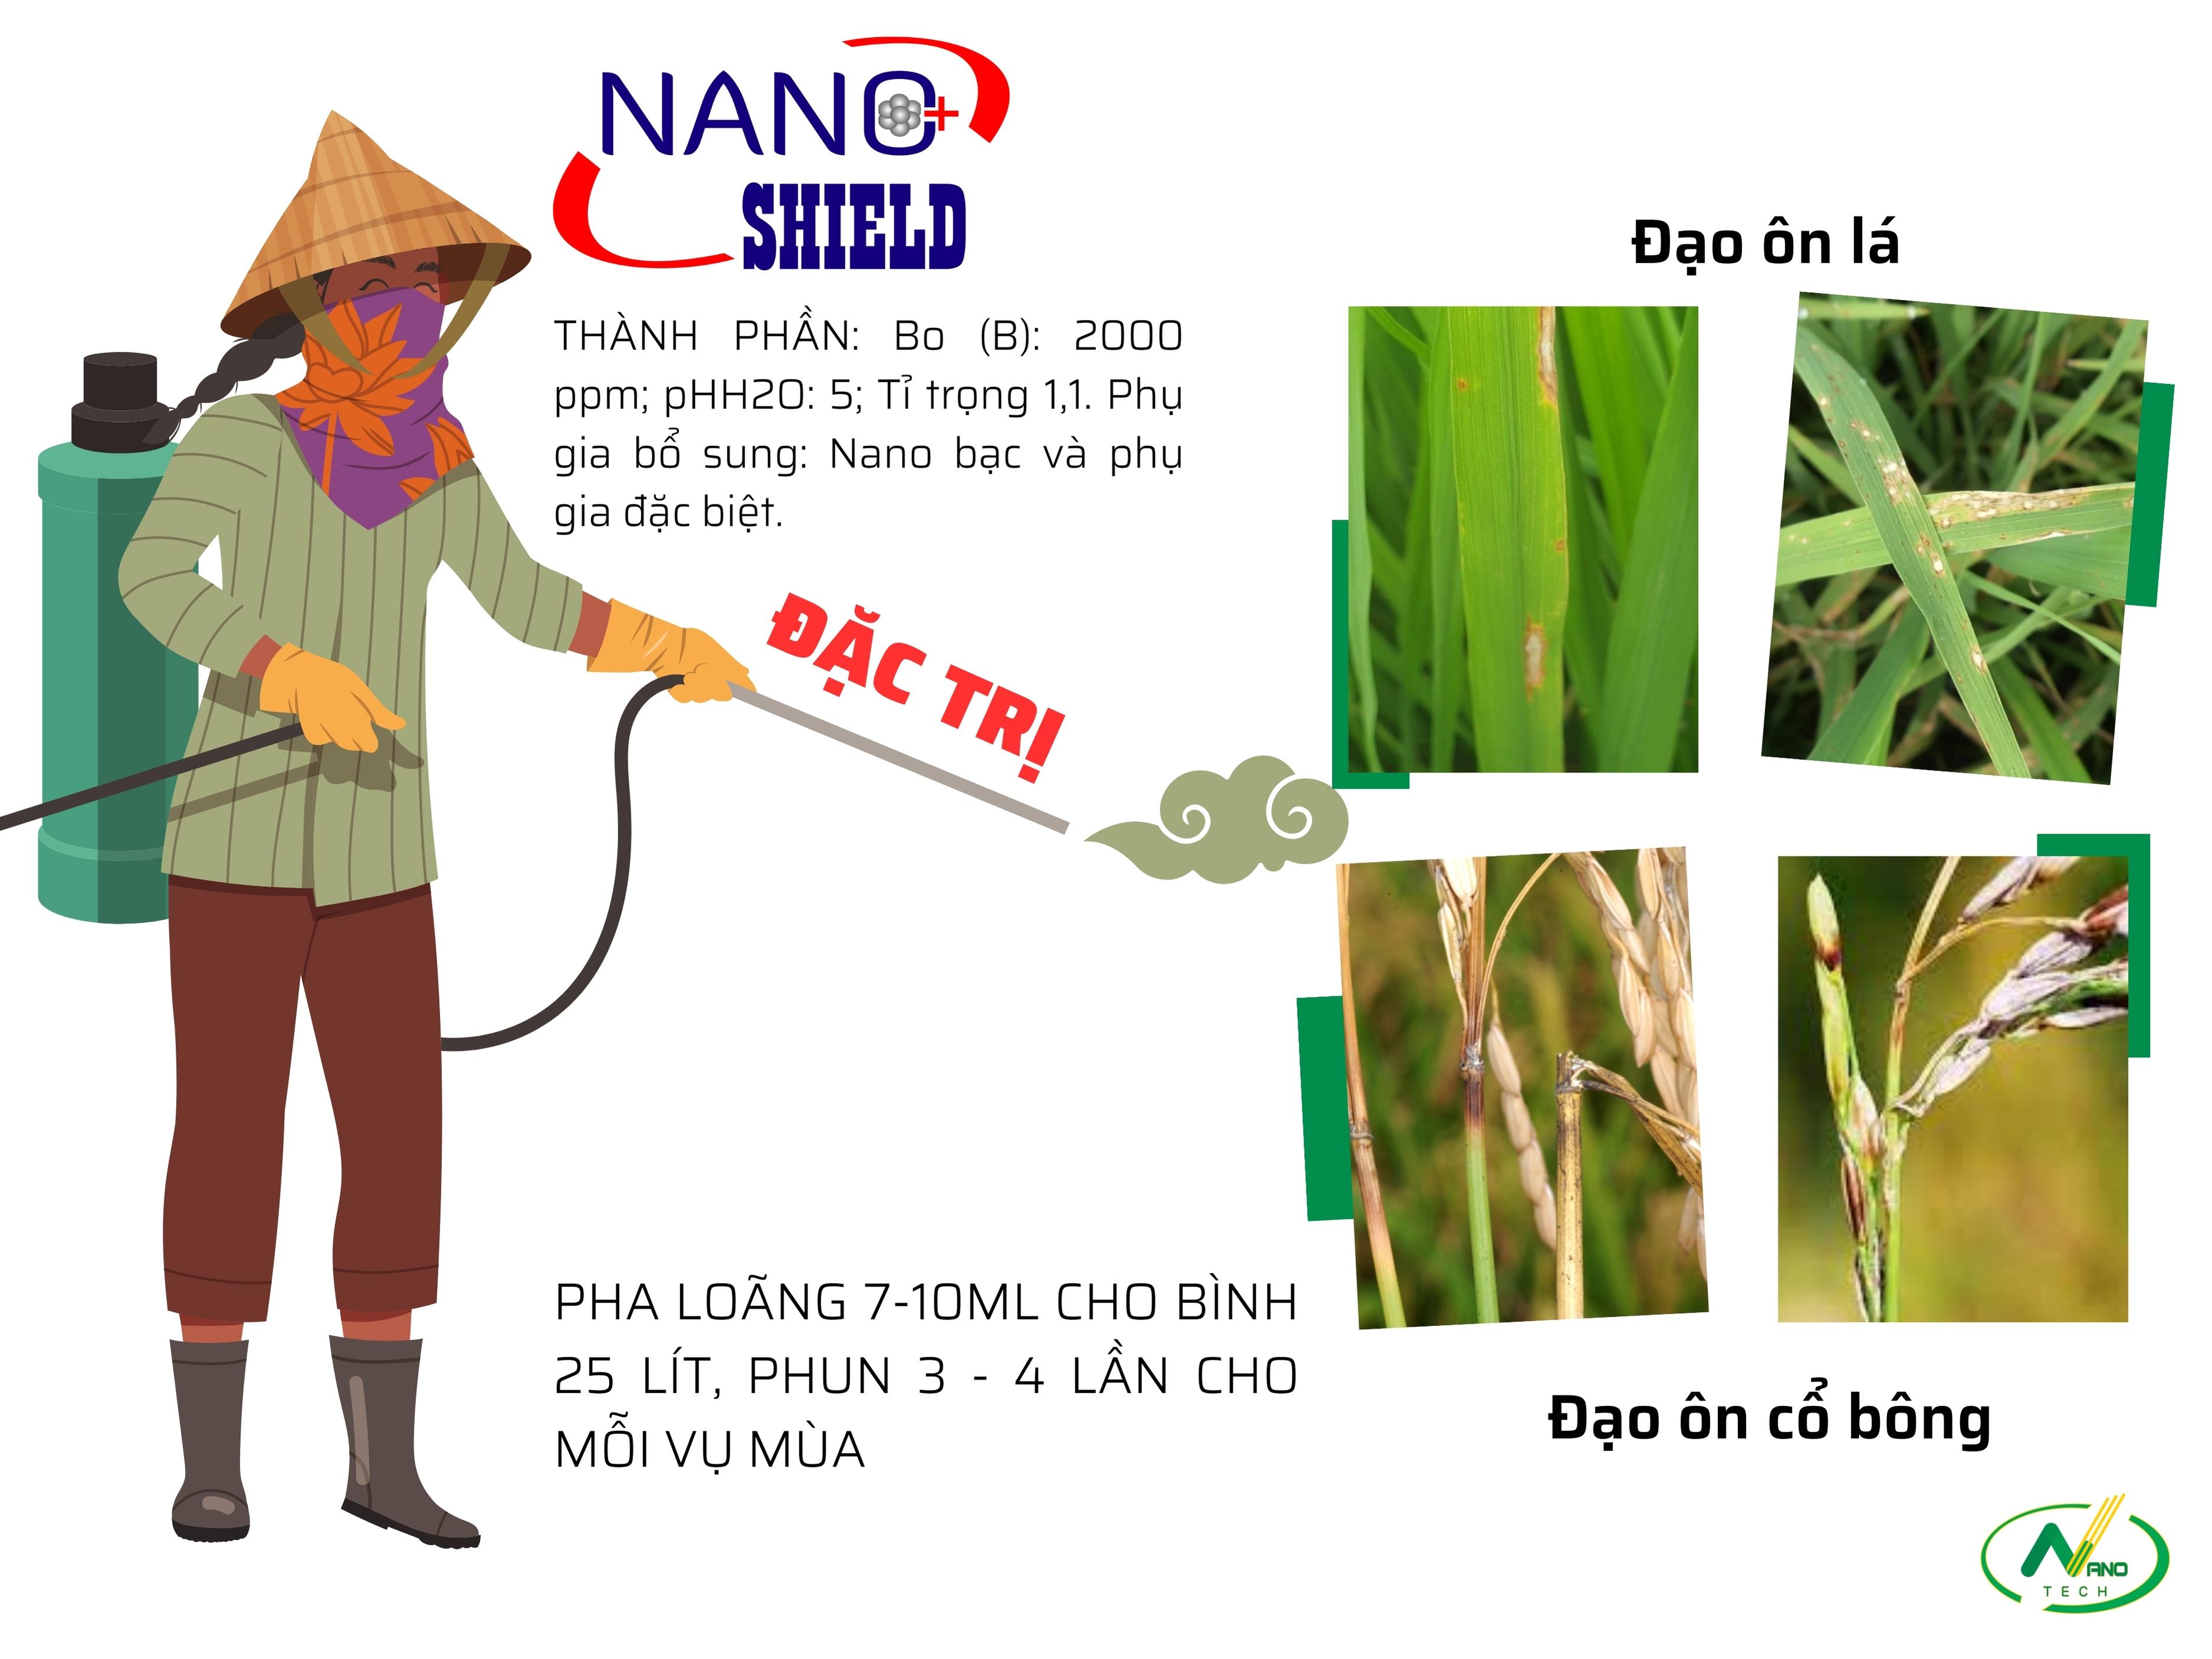 Bộ sản phẩm DIỆT KHUẨN VÀ TRỊ ĐẠO ÔN cho lúa hiệu quả và tiết kiệm chi phí